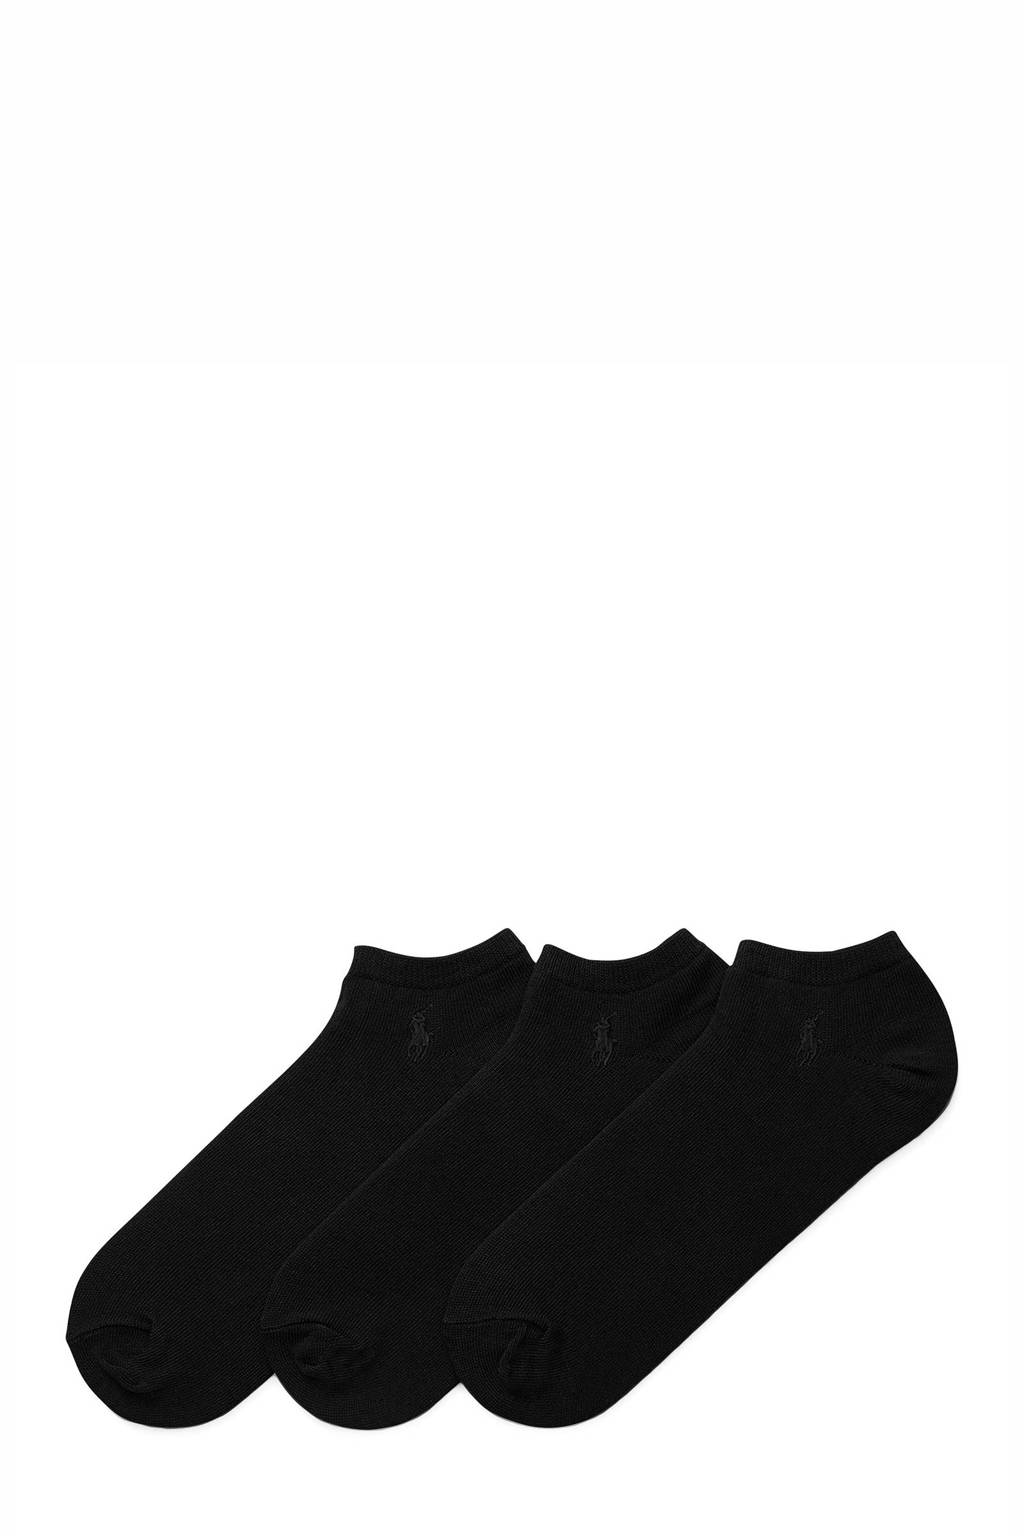 Ralph Lauren enkelsokken - set van 3 zwart, Zwart